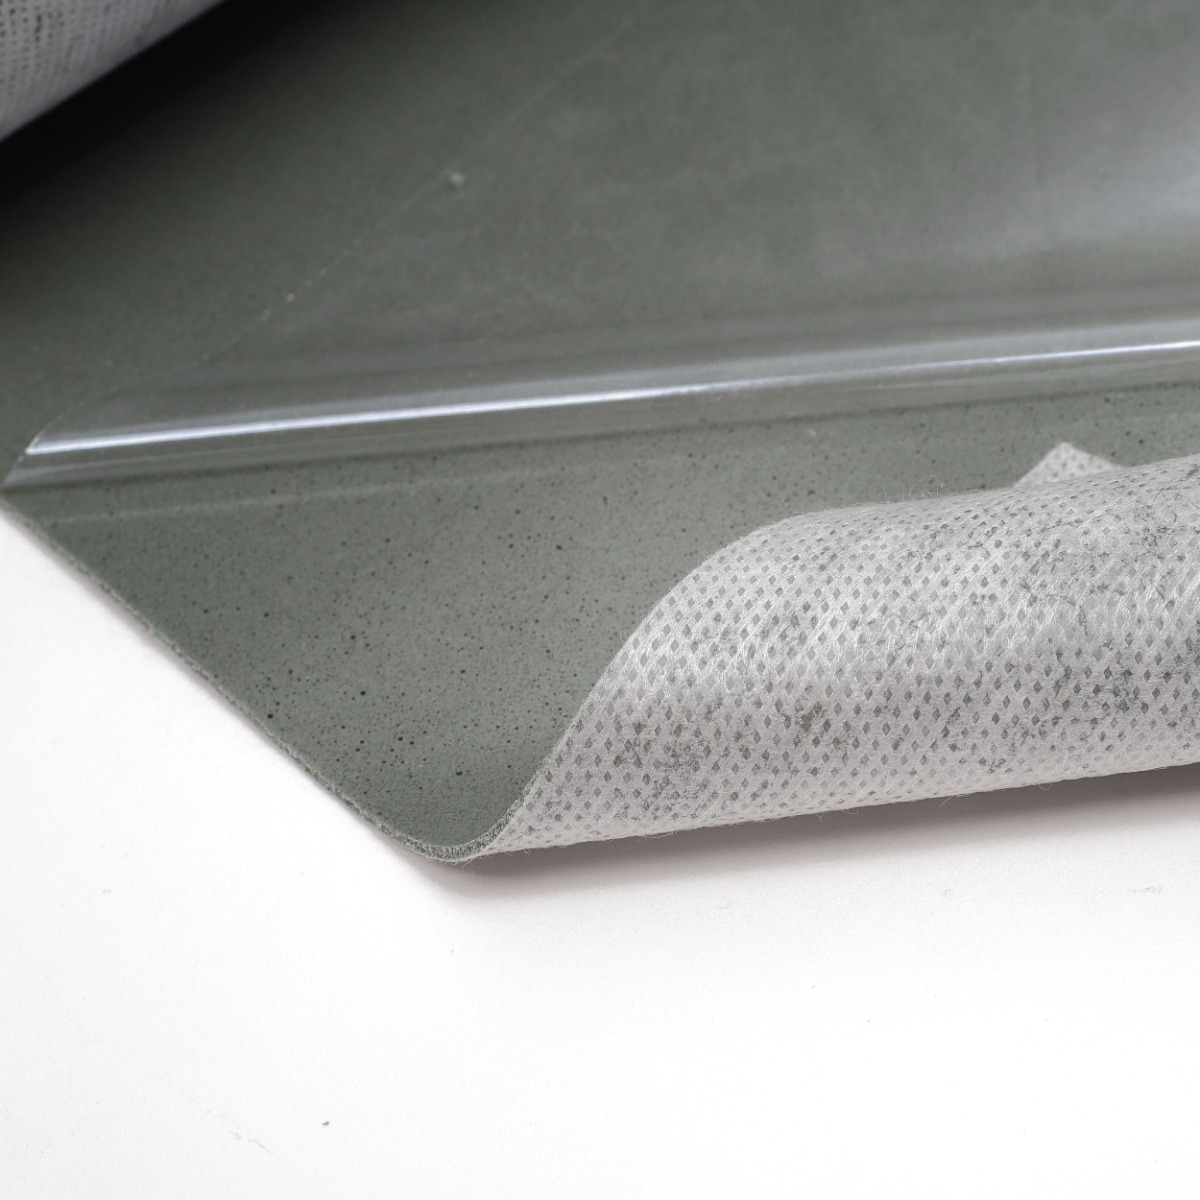 Szczegółowy widok tekstury podkładu Multi Grip LVT dla paneli winylowych, 1,5 mm grubości